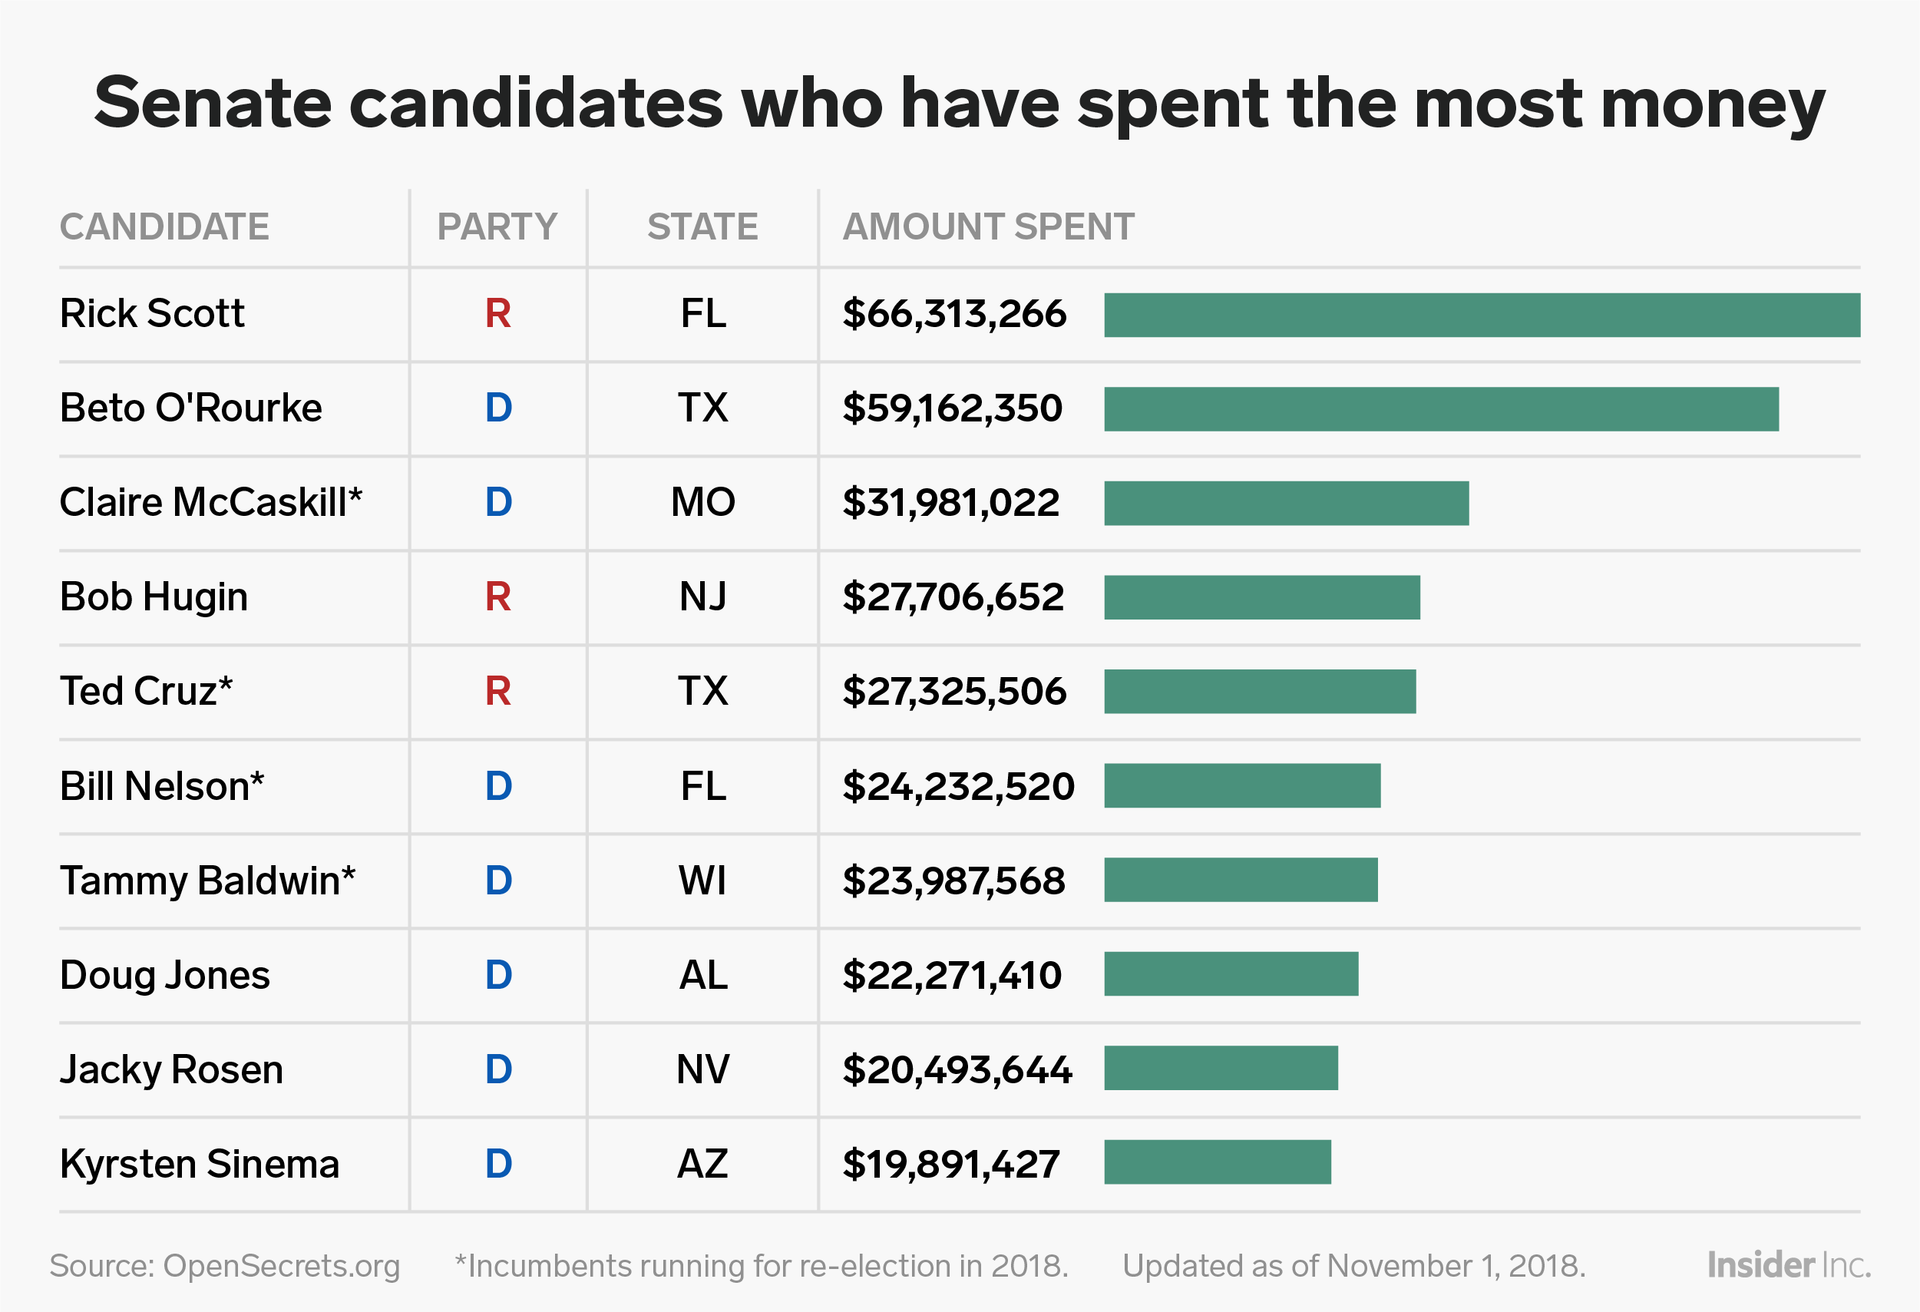 Danh sách các ứng viên Thượng viện Đảng Dân chủ (D) và Đảng Cộng hoà (R) chi nhiều tiền nhất. Ảnh: BI